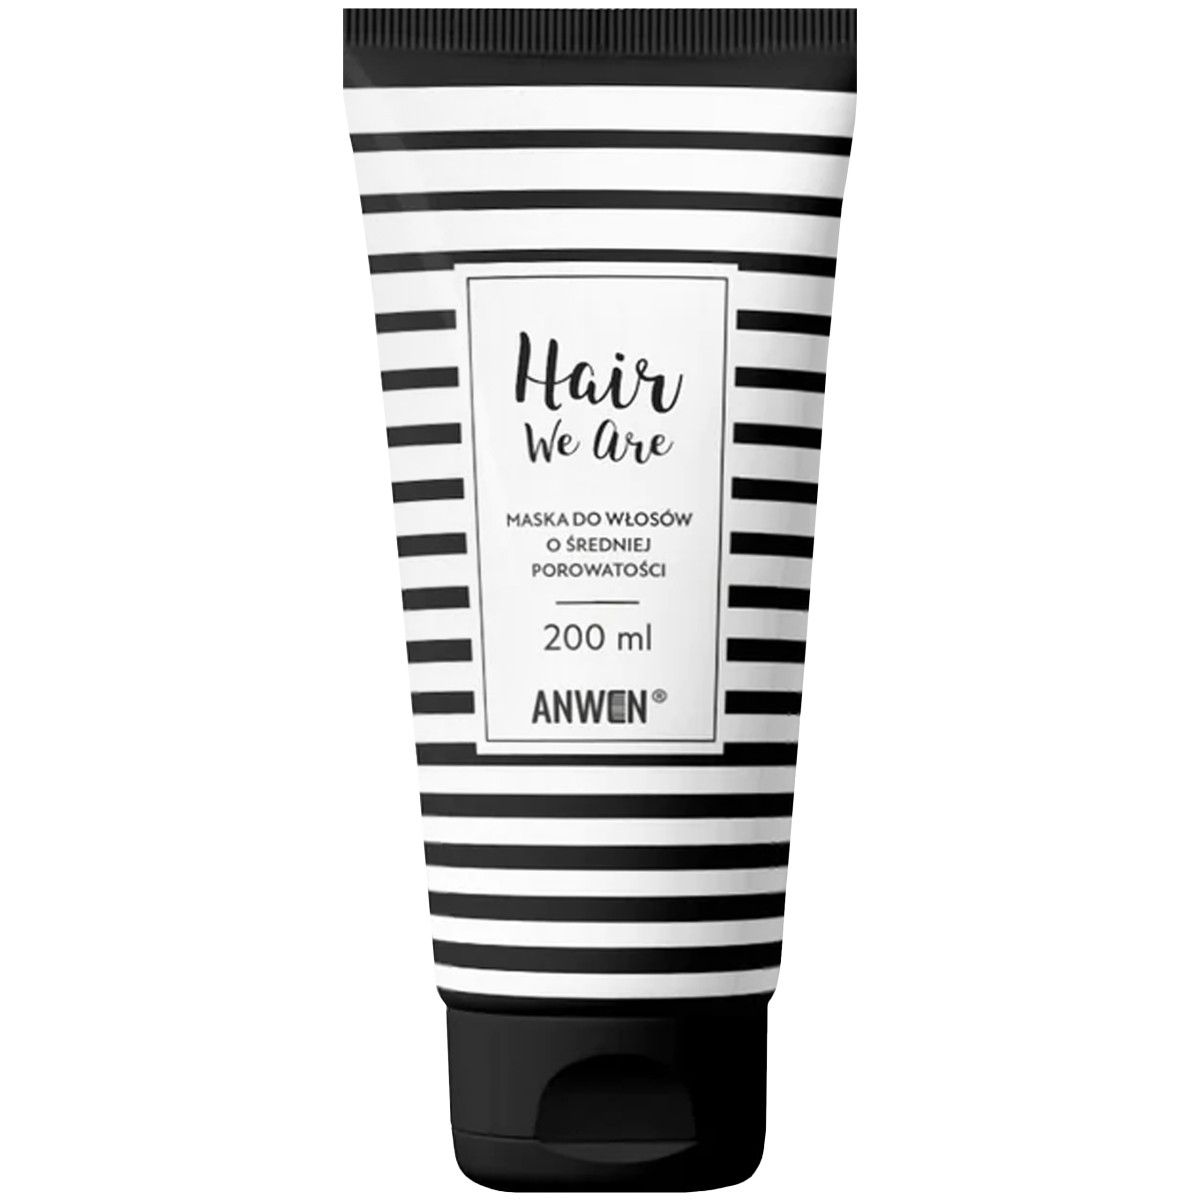 Anwen Hair We Are - maska do włosów o średniej porowatości z olejem rycynowym, 200ml